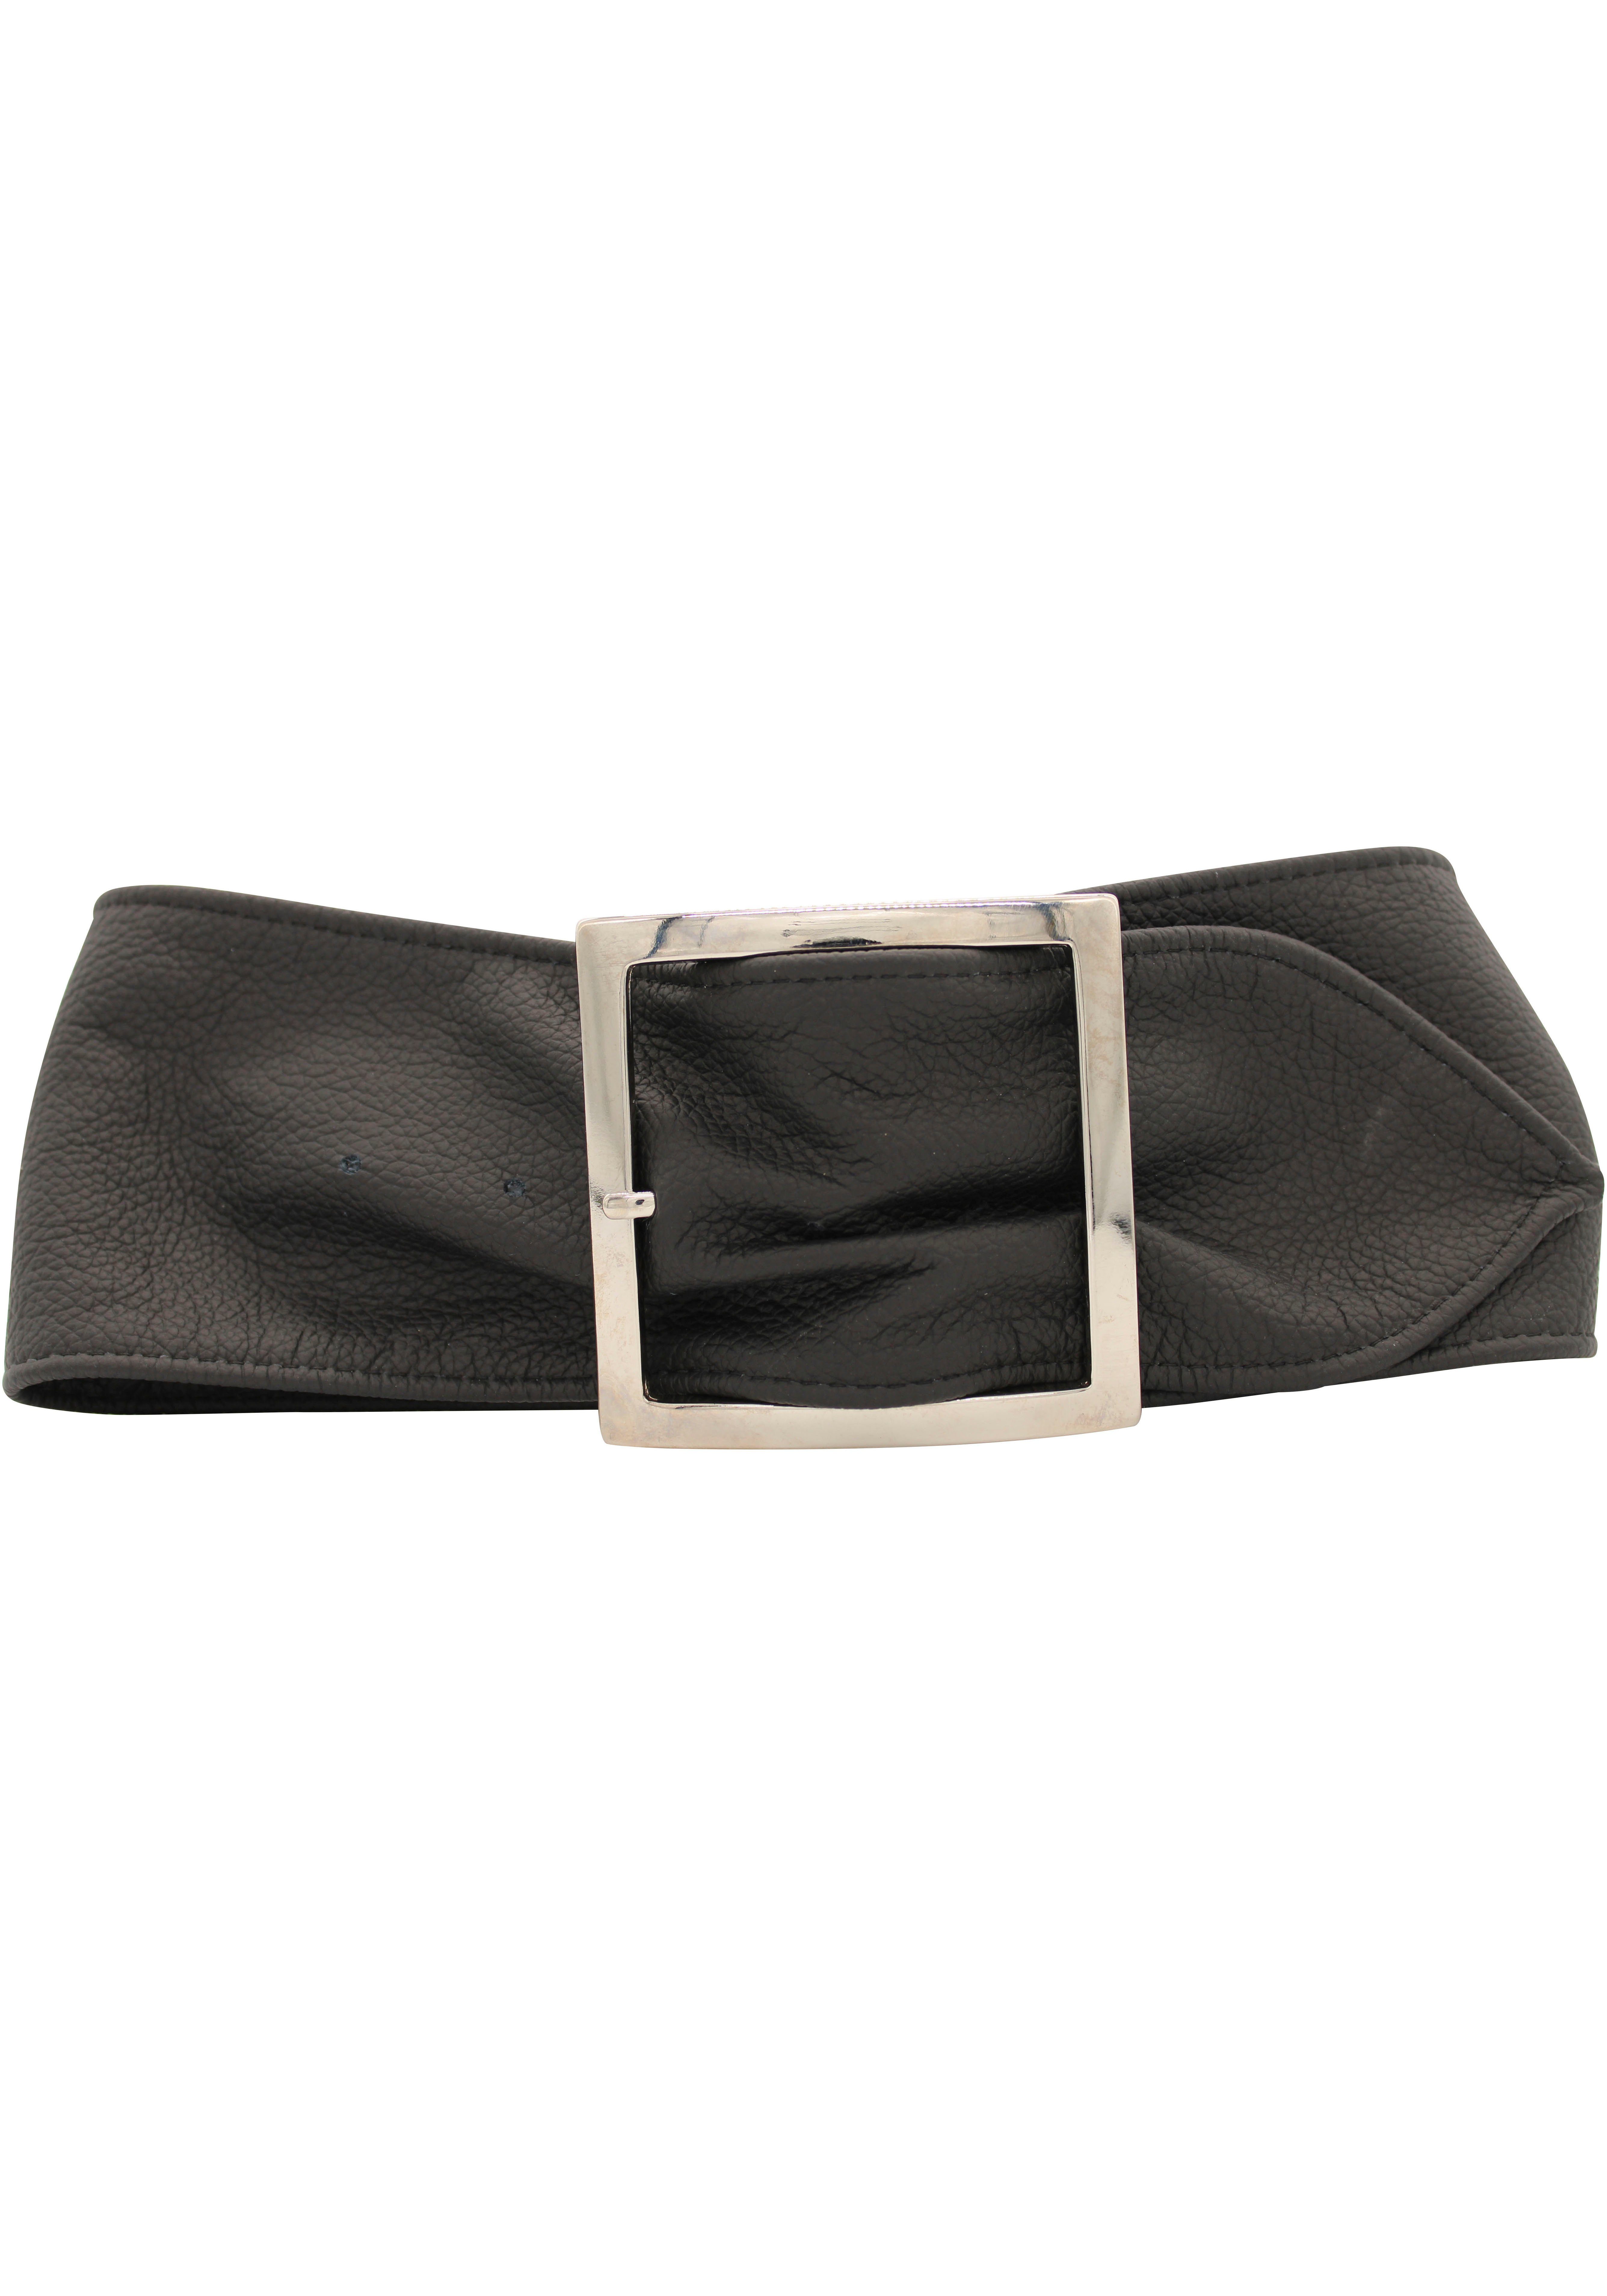 schwarz Taillengürtel AnnaMatoni weichem Leder aus genarbtem